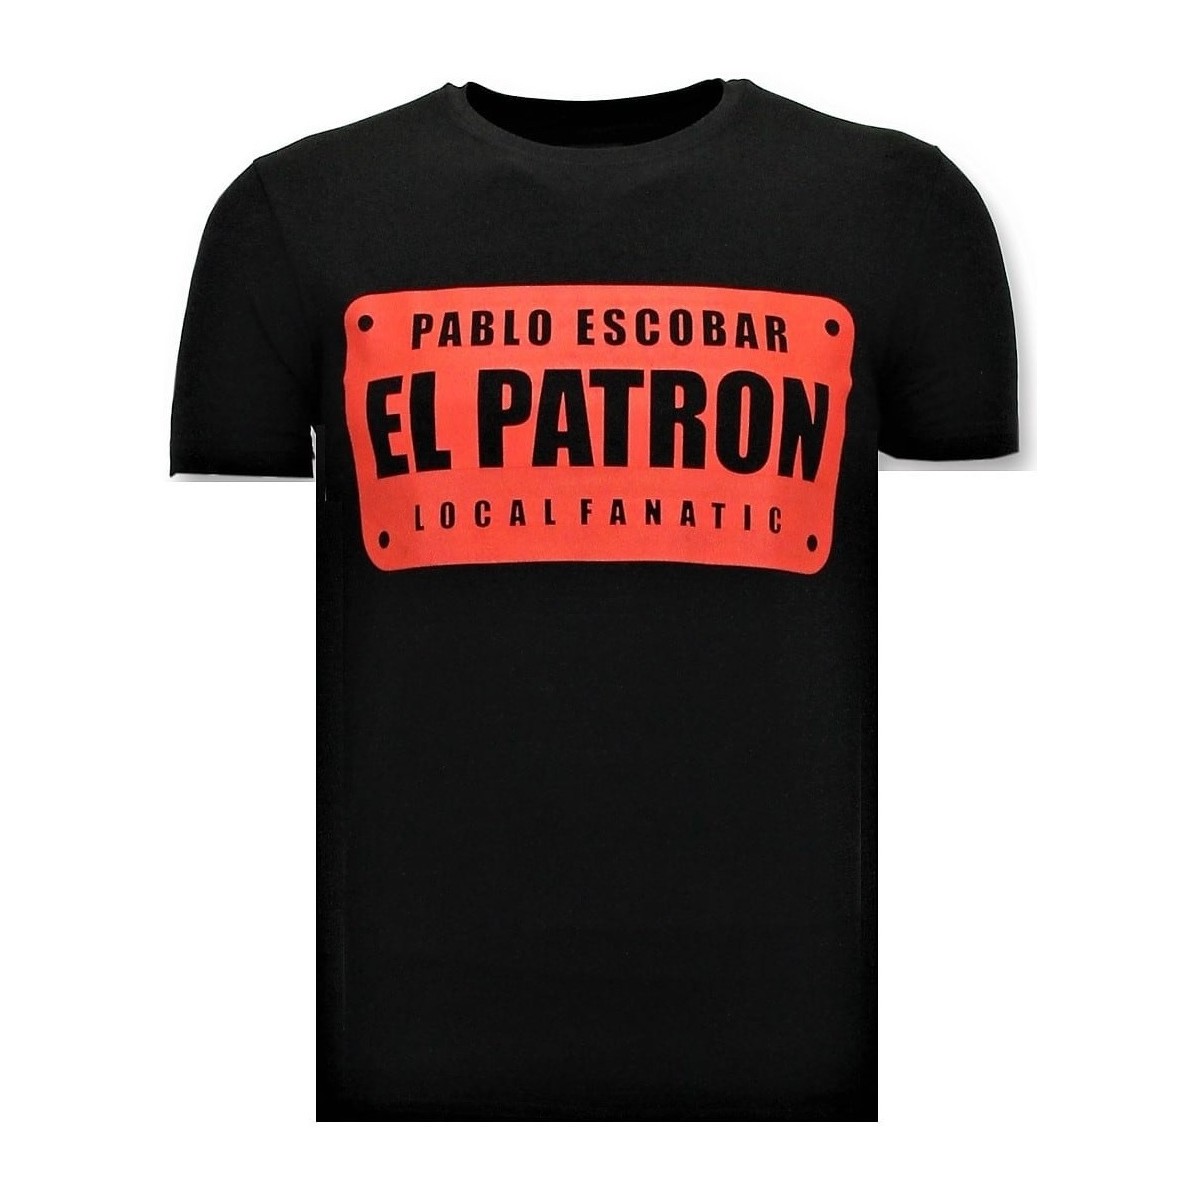 textil Herr T-shirts Local Fanatic Pablo Escobar El Patron Svart